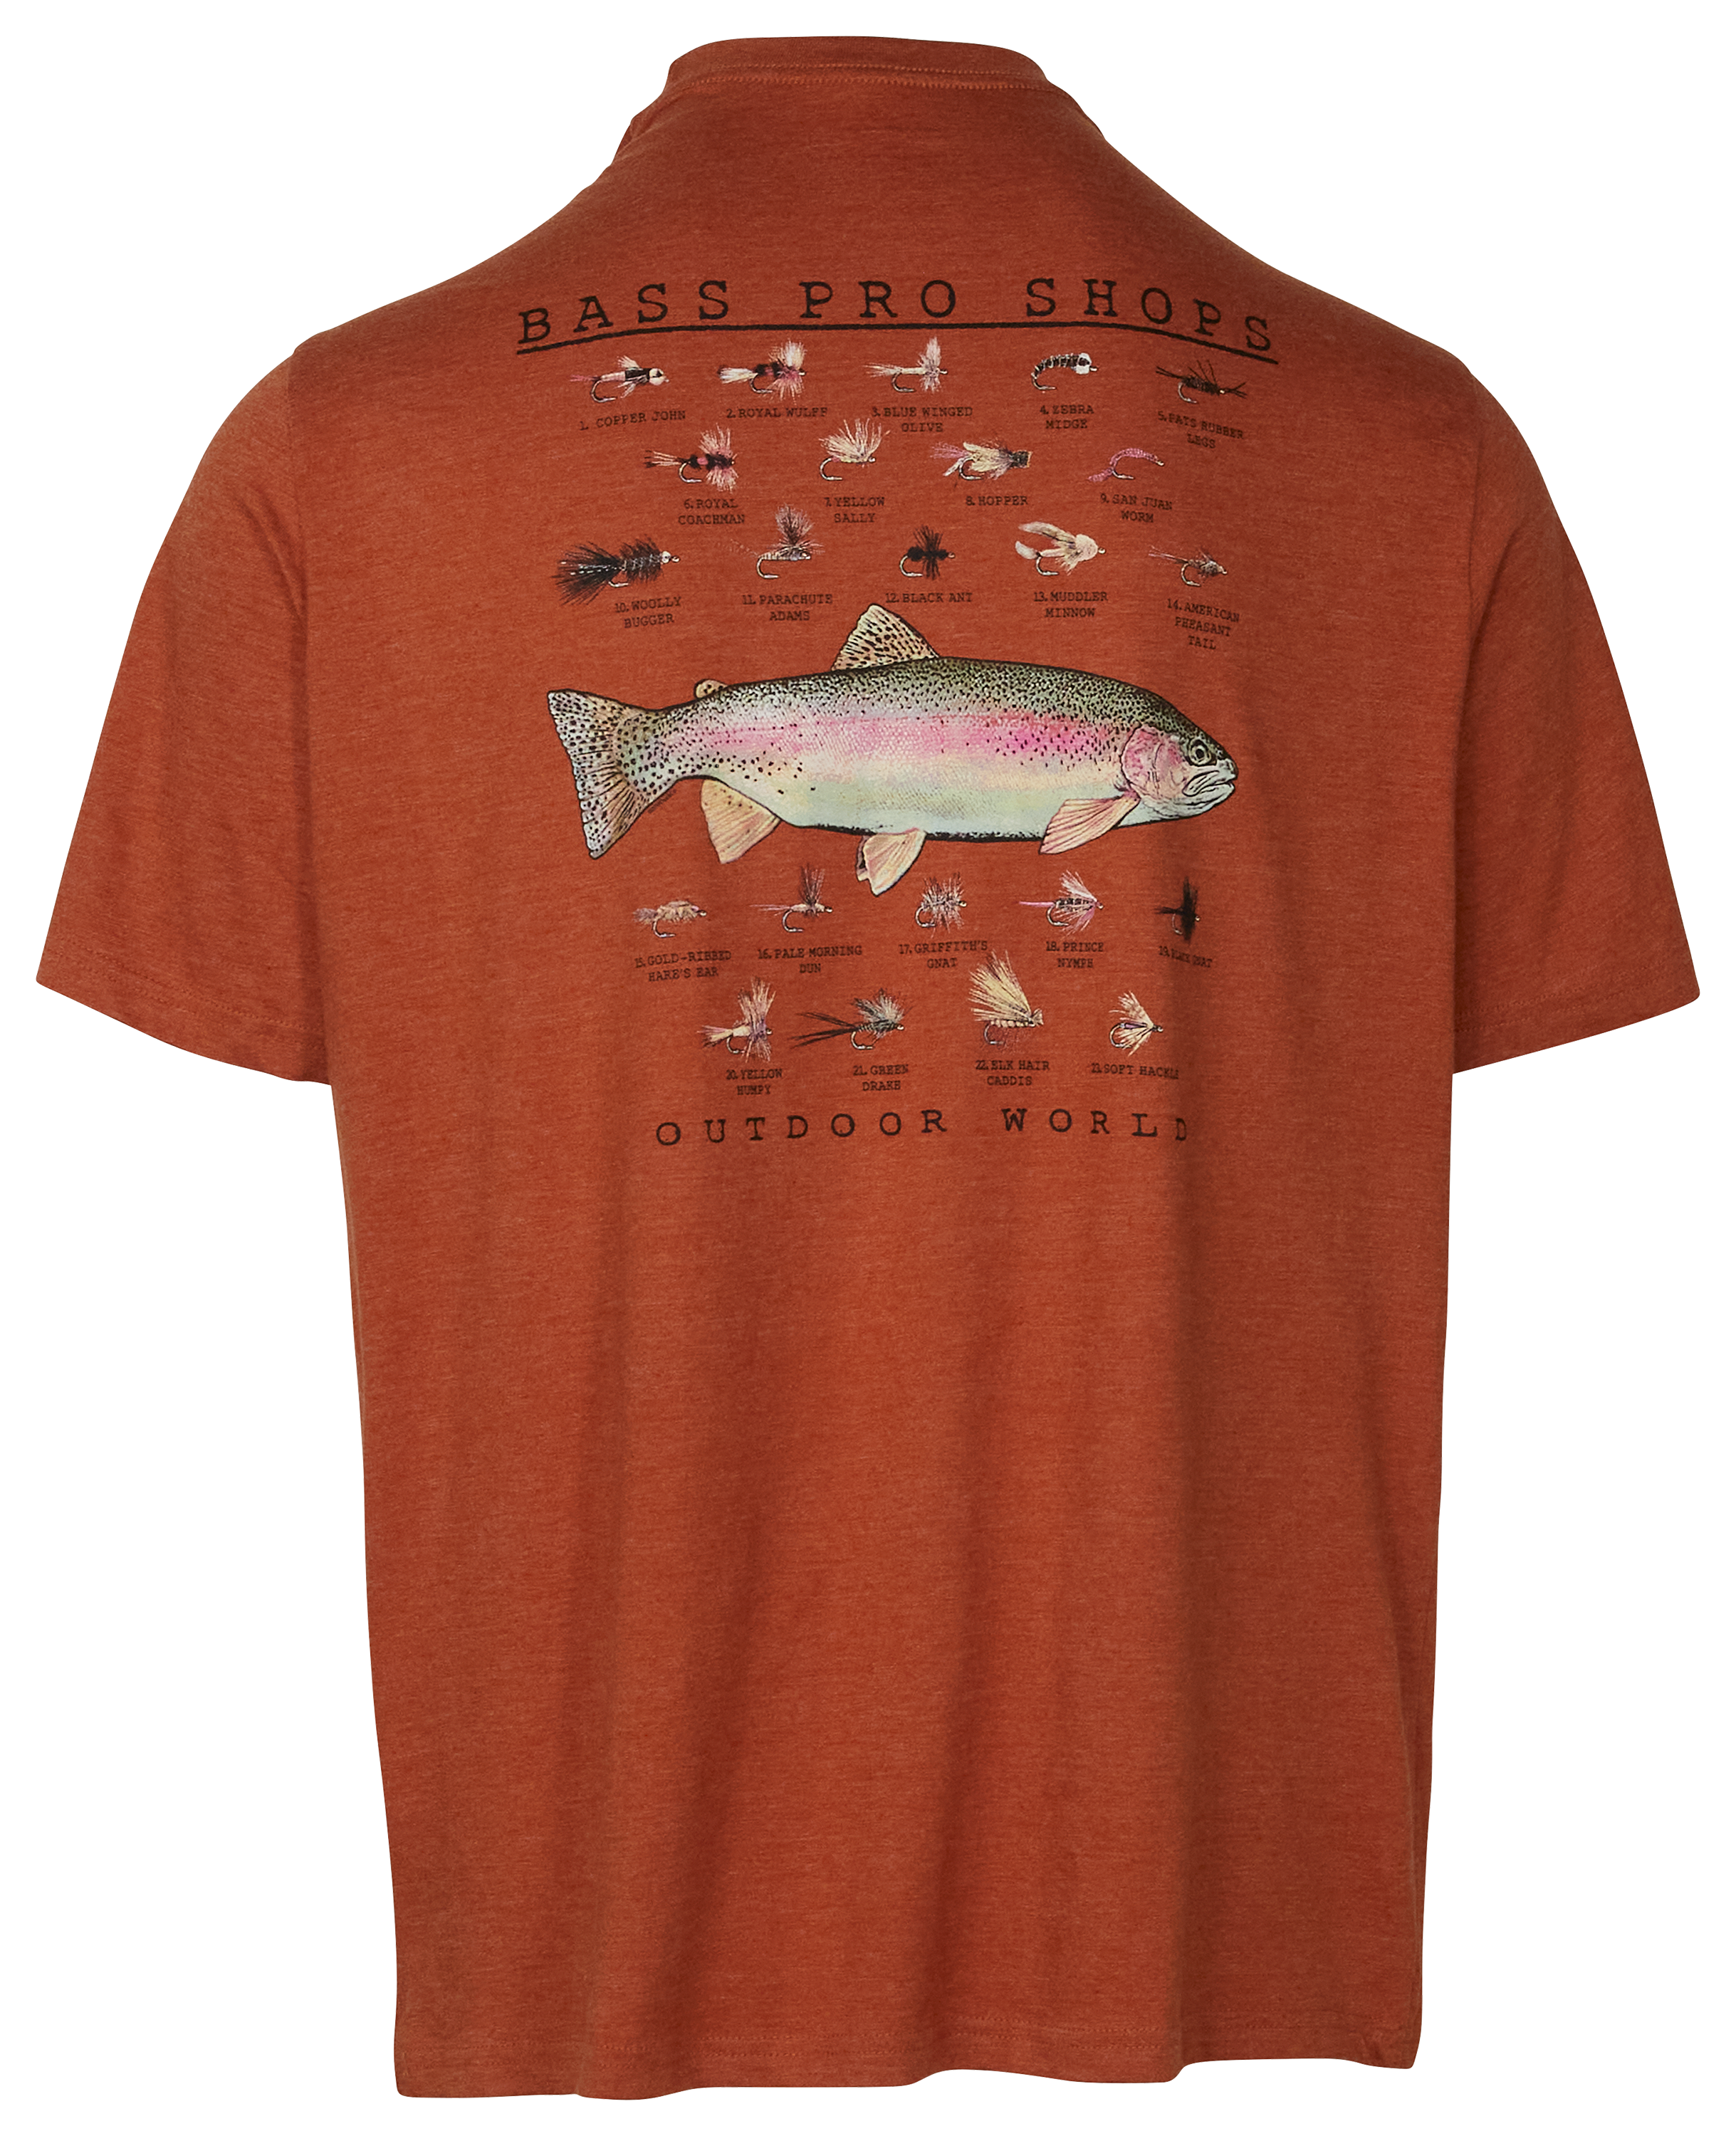 Bass Pro Shops Trout Flies Short-Sleeve T-Shirt for Men - Rust Heather - S